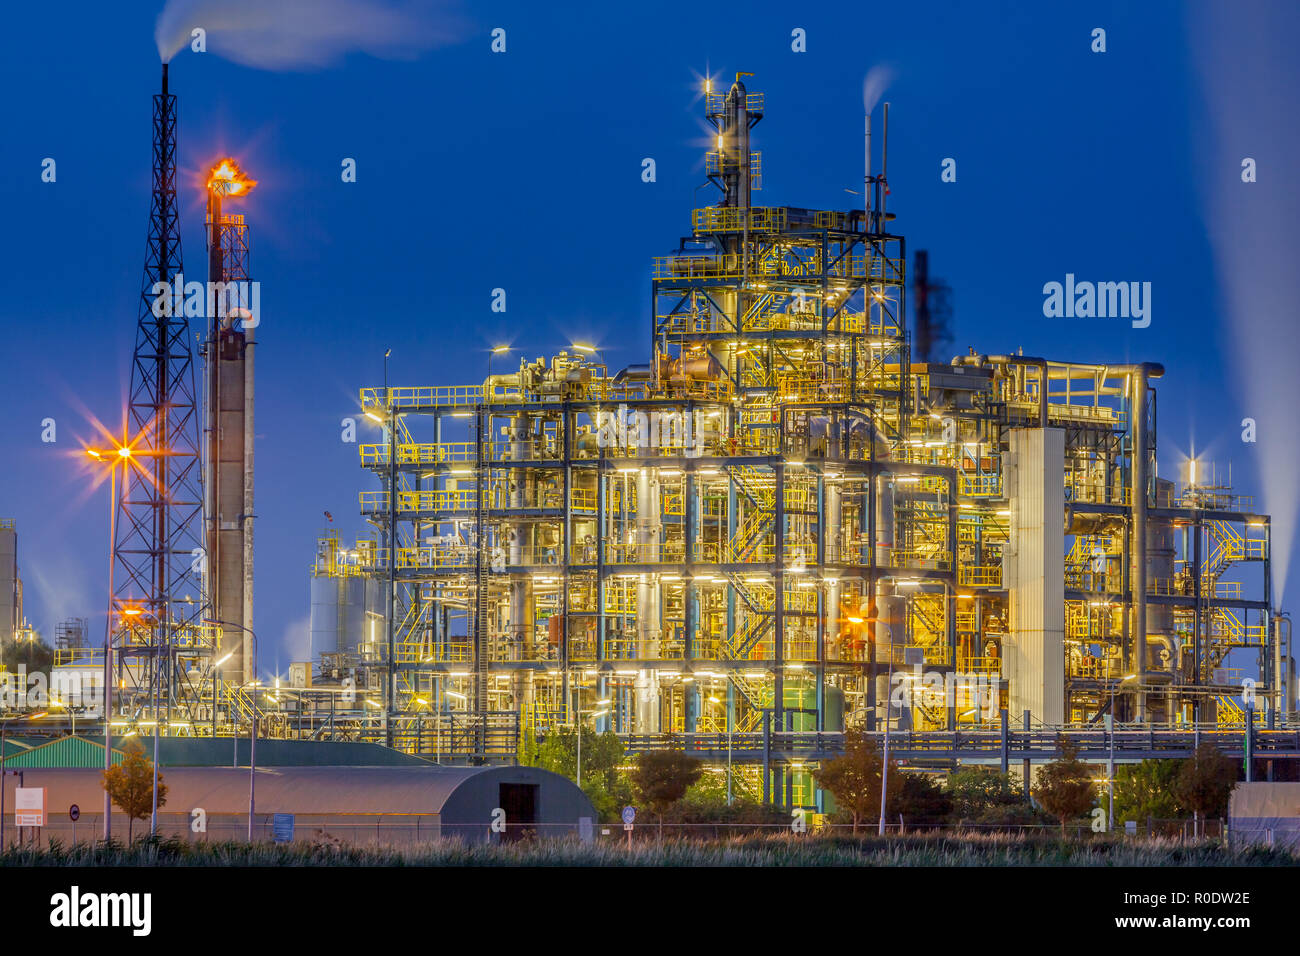 Scène de nuit d'une usine de produits chimiques industriels cadre avec un labyrinthe de tubes et tuyaux au crépuscule Banque D'Images